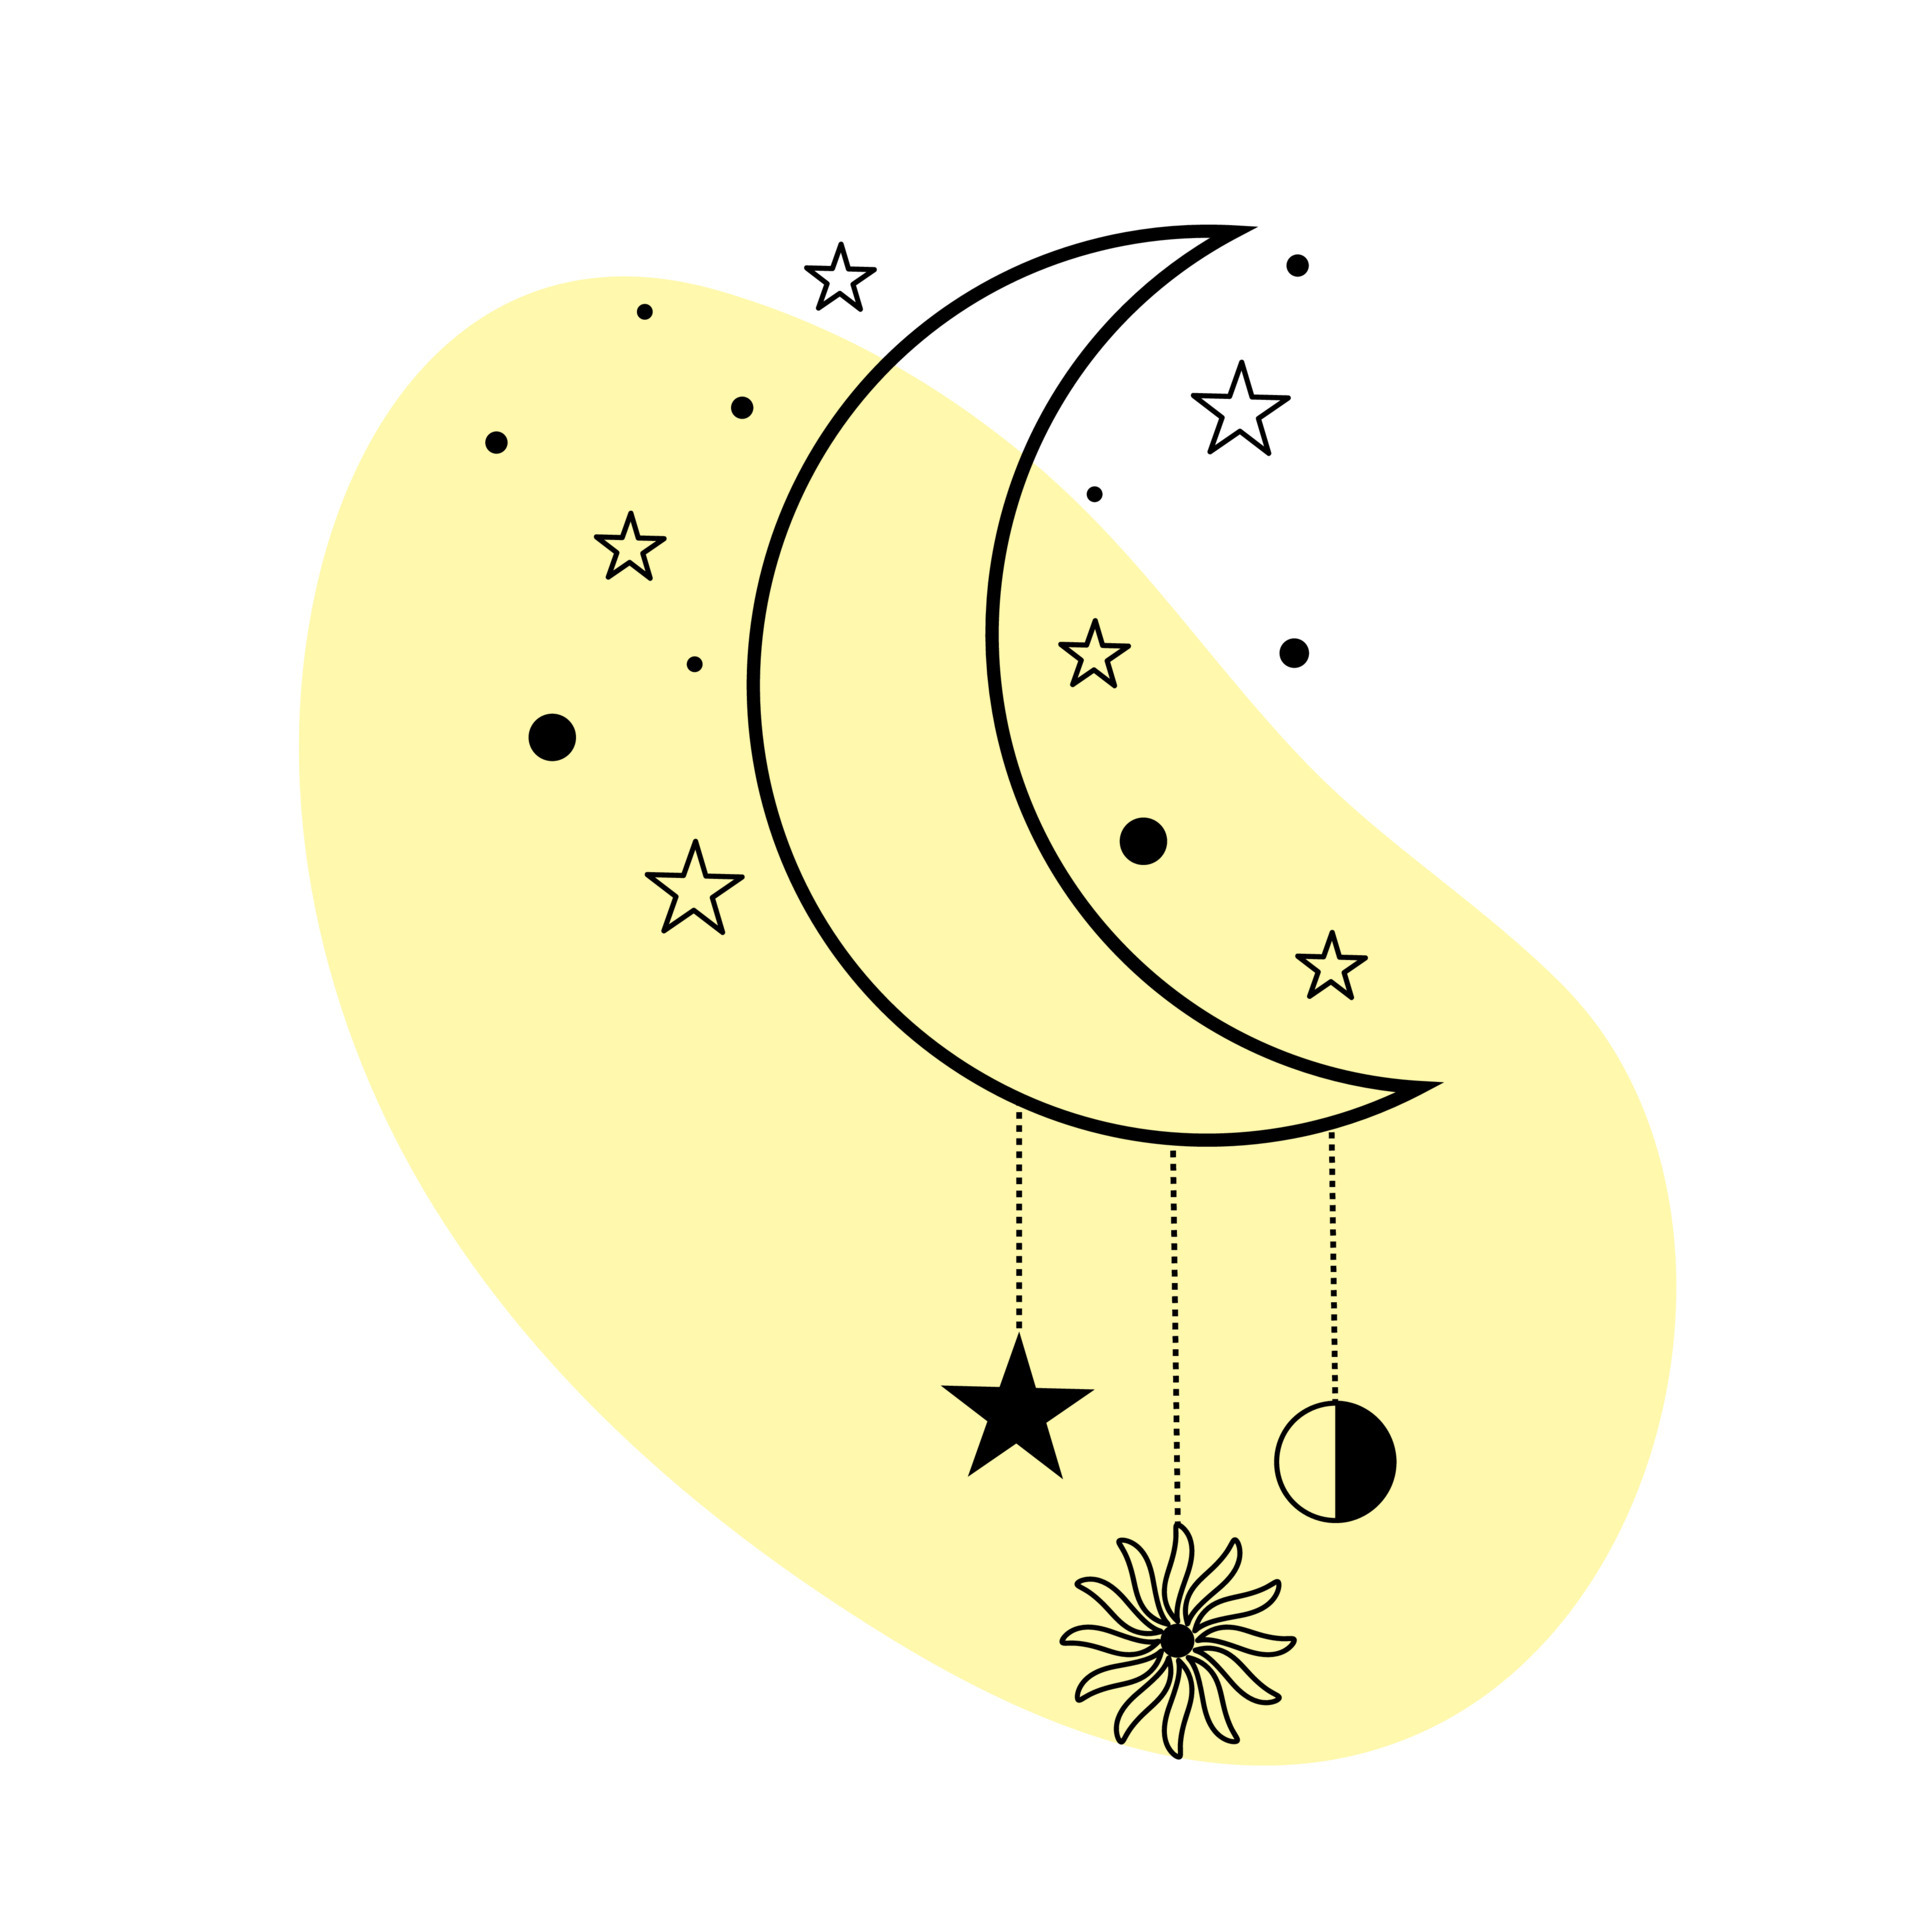 Bungalow koolhydraat borstel maan met sterren en zon in zeer fijne tekeningen. spirituele symbool  hemelse ruimte. 4749457 Vectorkunst bij Vecteezy